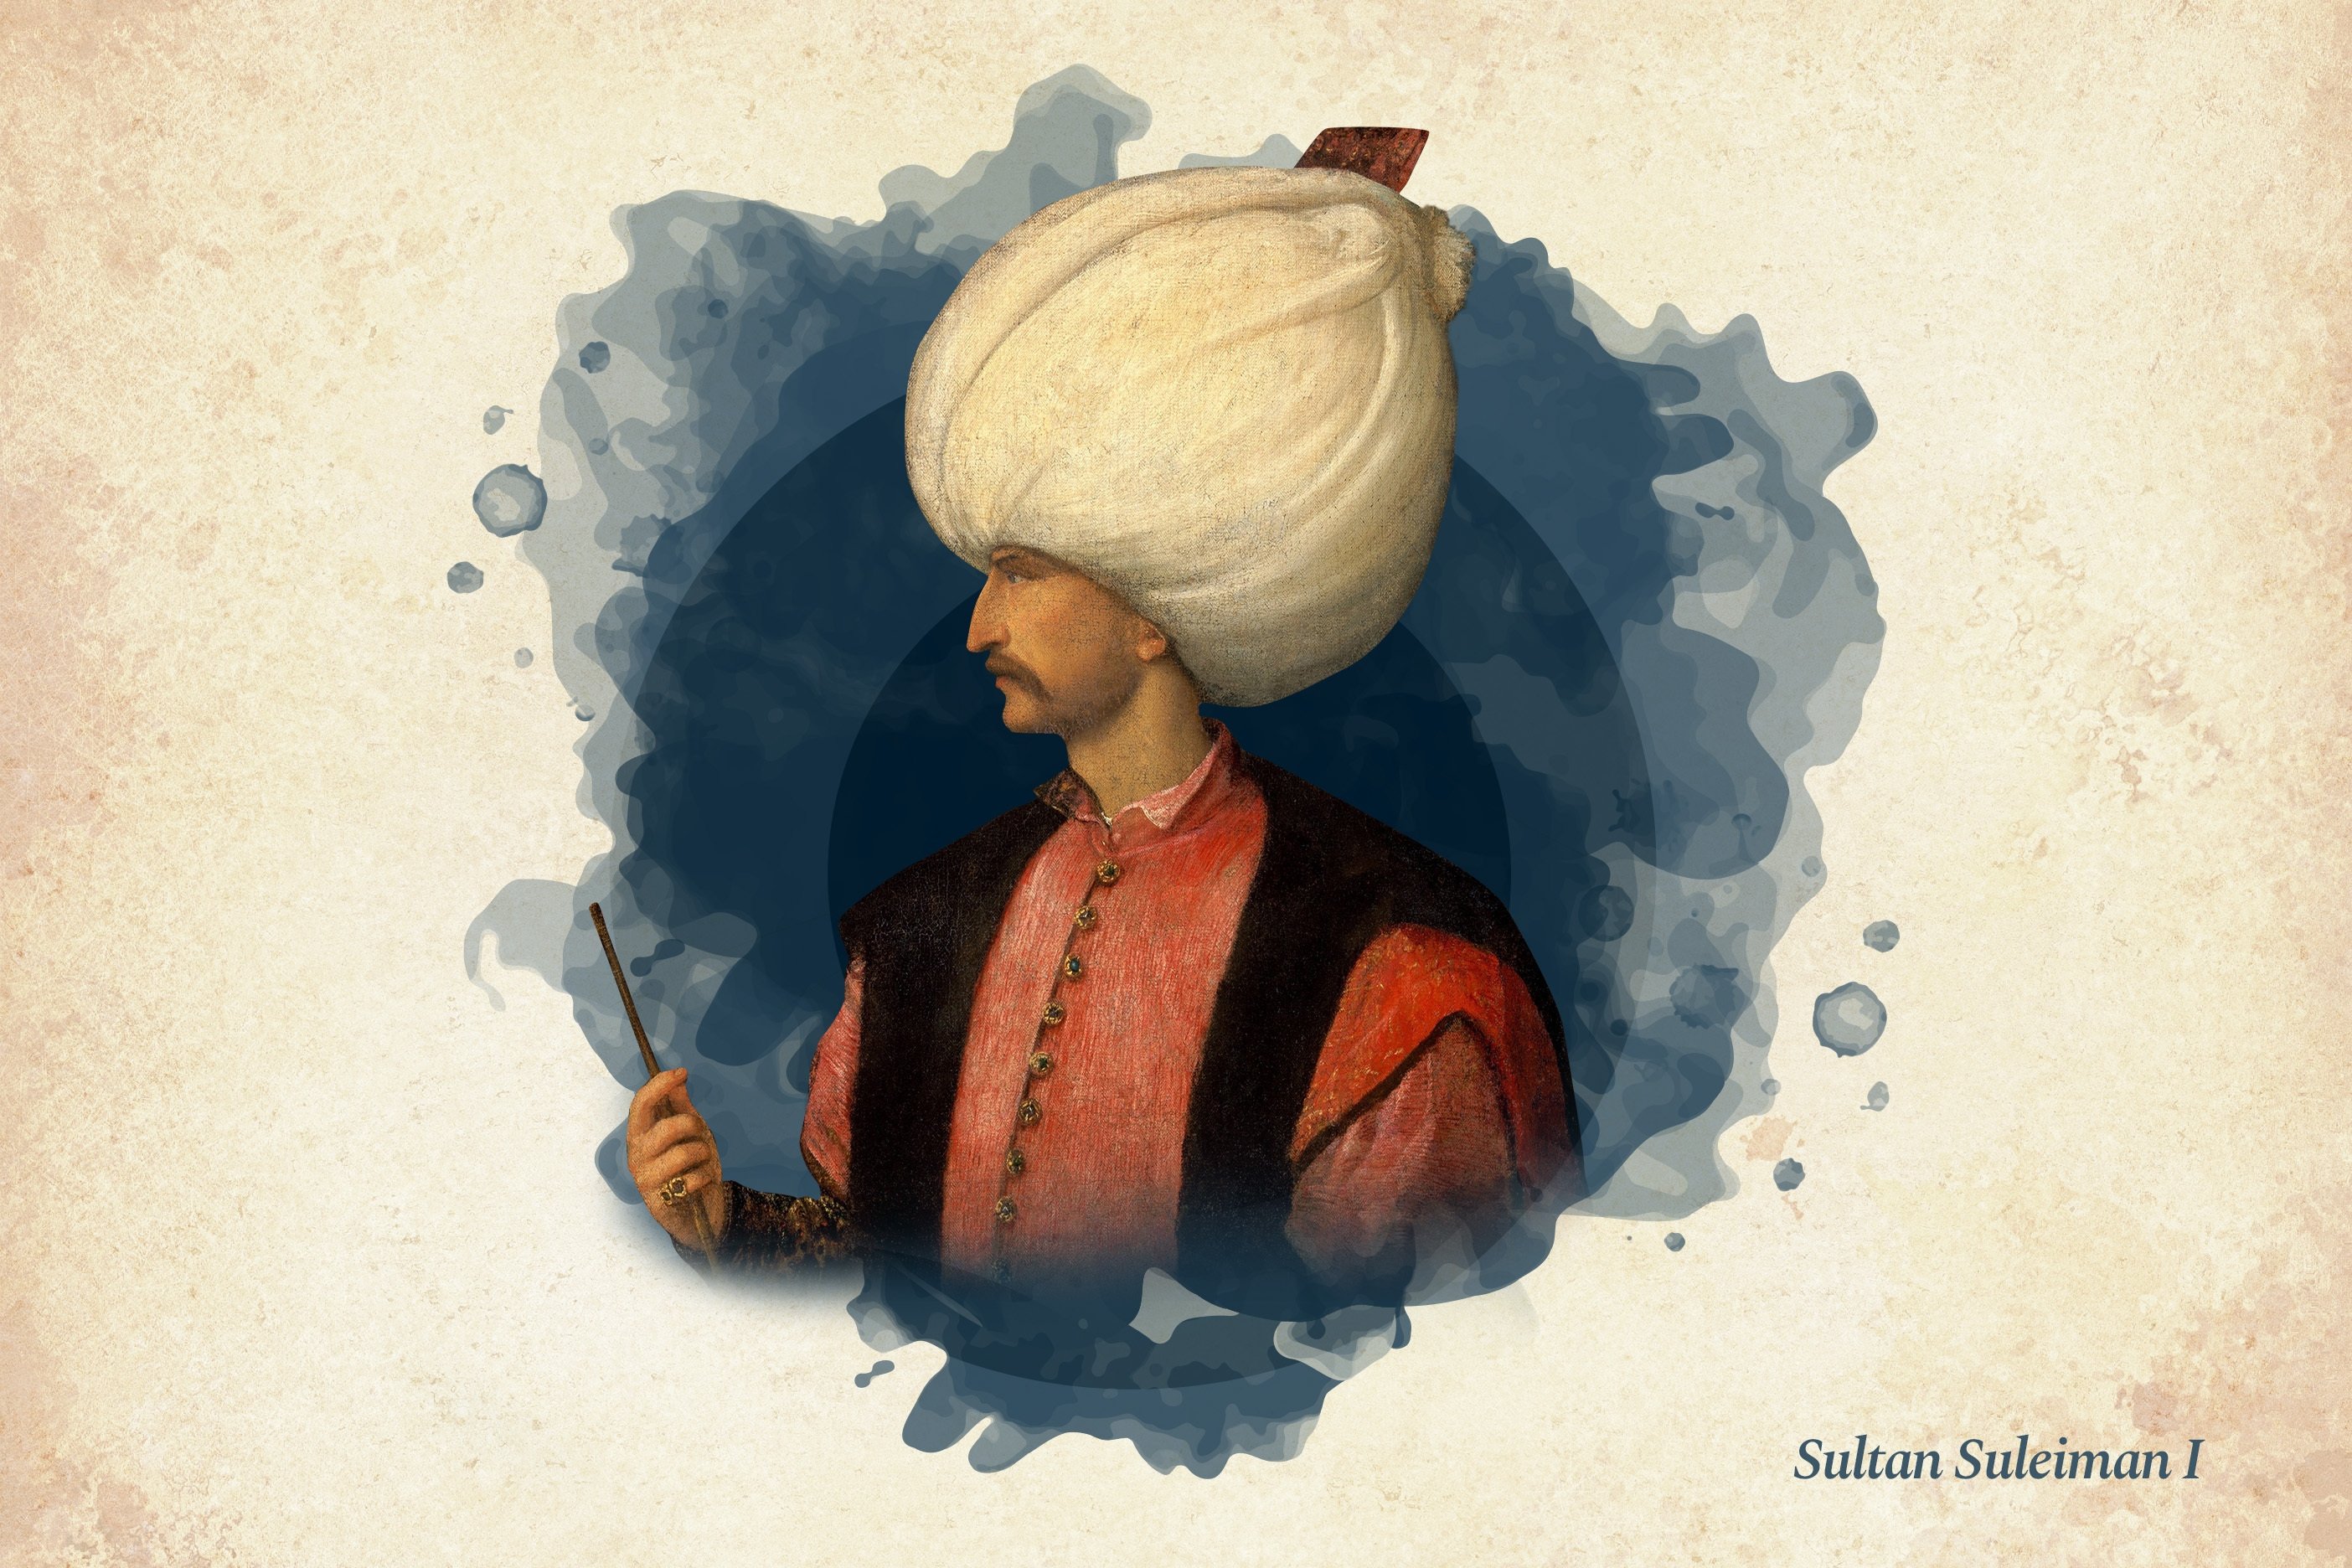 Ottoman Sultan Suleiman